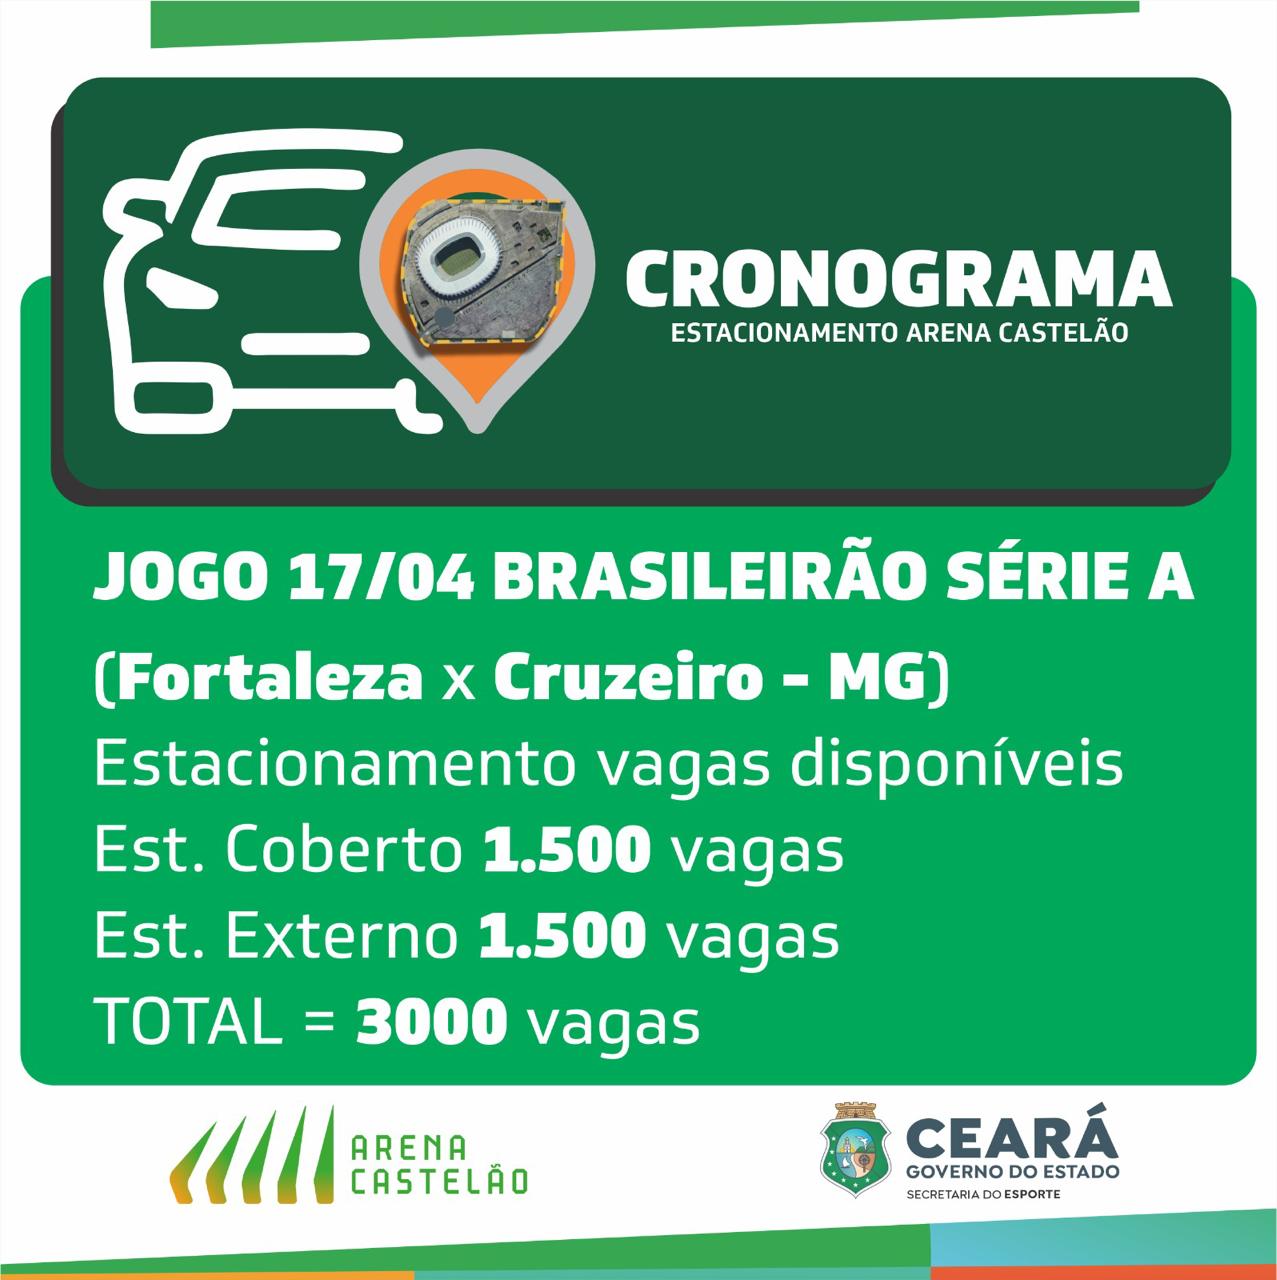 Arena Castelão contará com redução de vagas no estacionamento nos próximos jogos